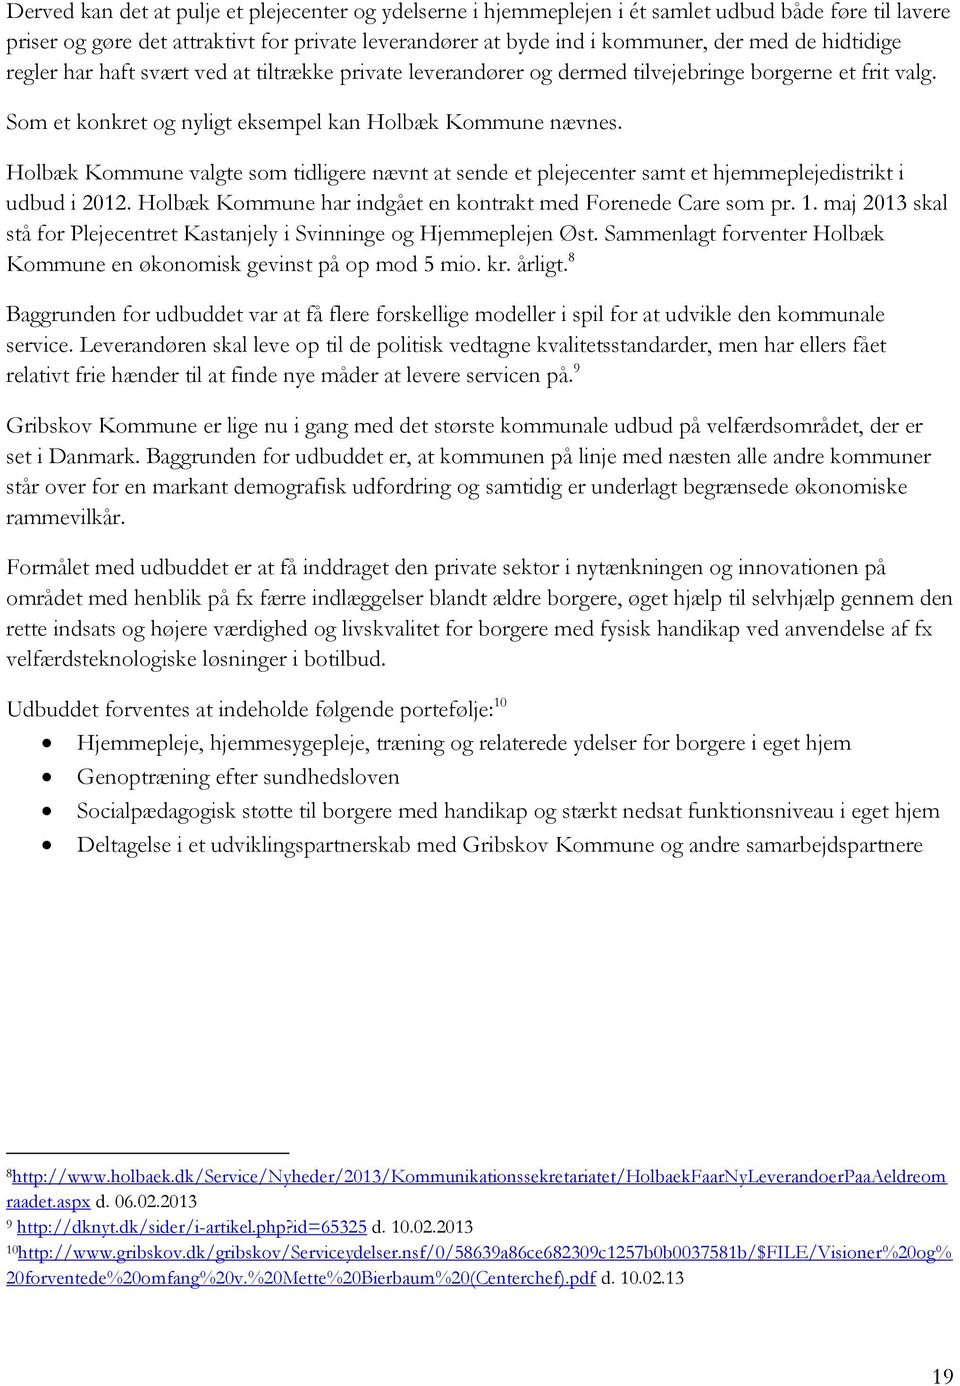 Holbæk Kommune valgte som tidligere nævnt at sende et plejecenter samt et hjemmeplejedistrikt i udbud i 2012. Holbæk Kommune har indgået en kontrakt med Forenede Care som pr. 1.